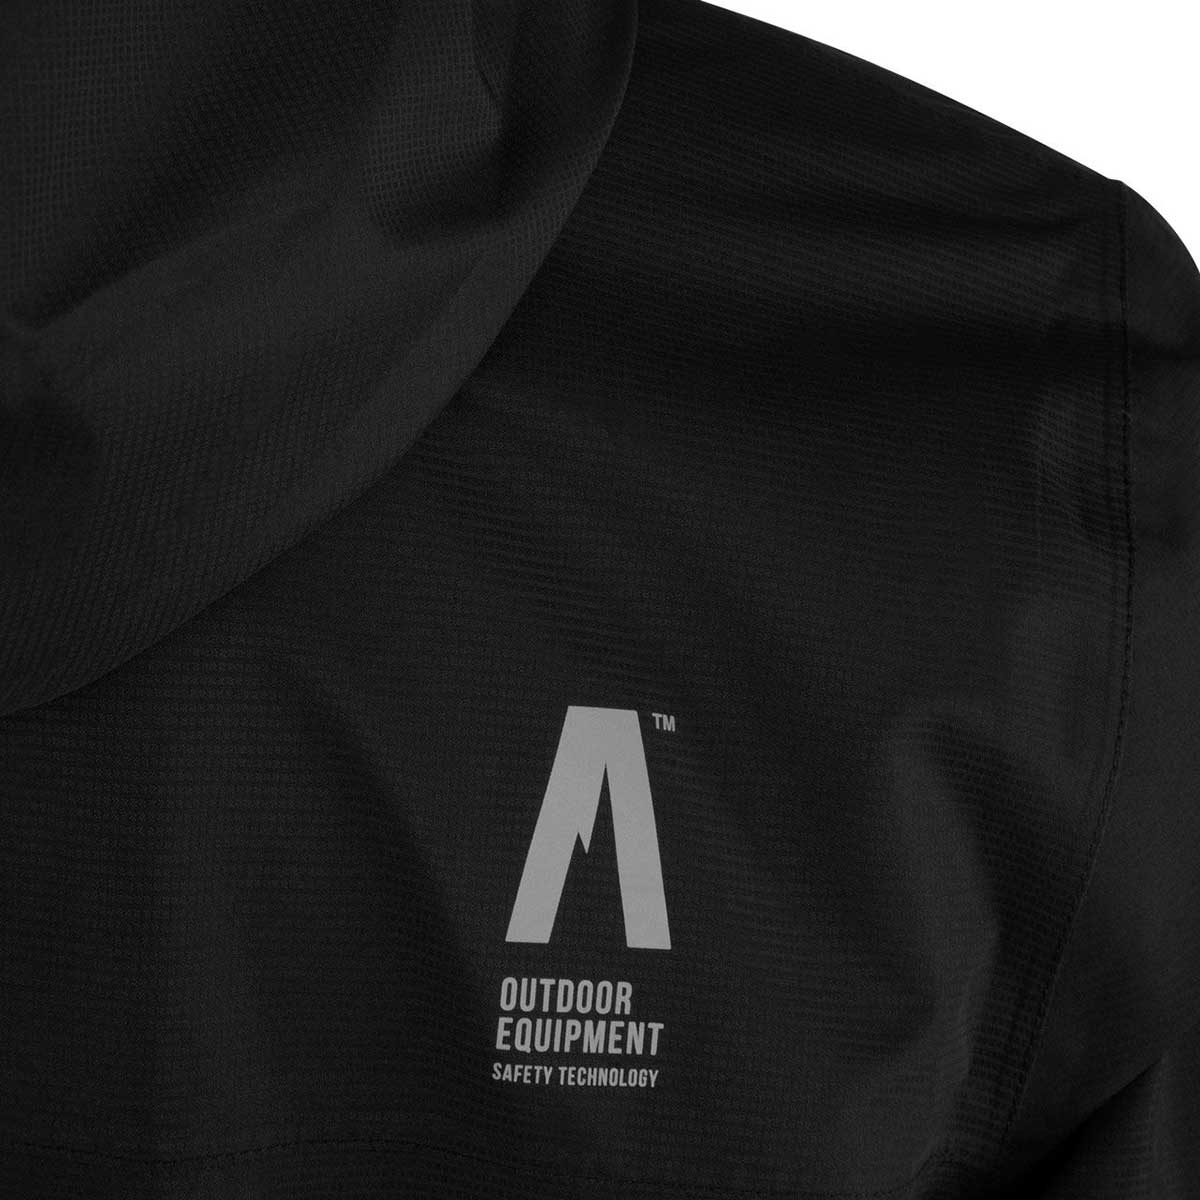 Куртка Alpinus Paterno - чорна